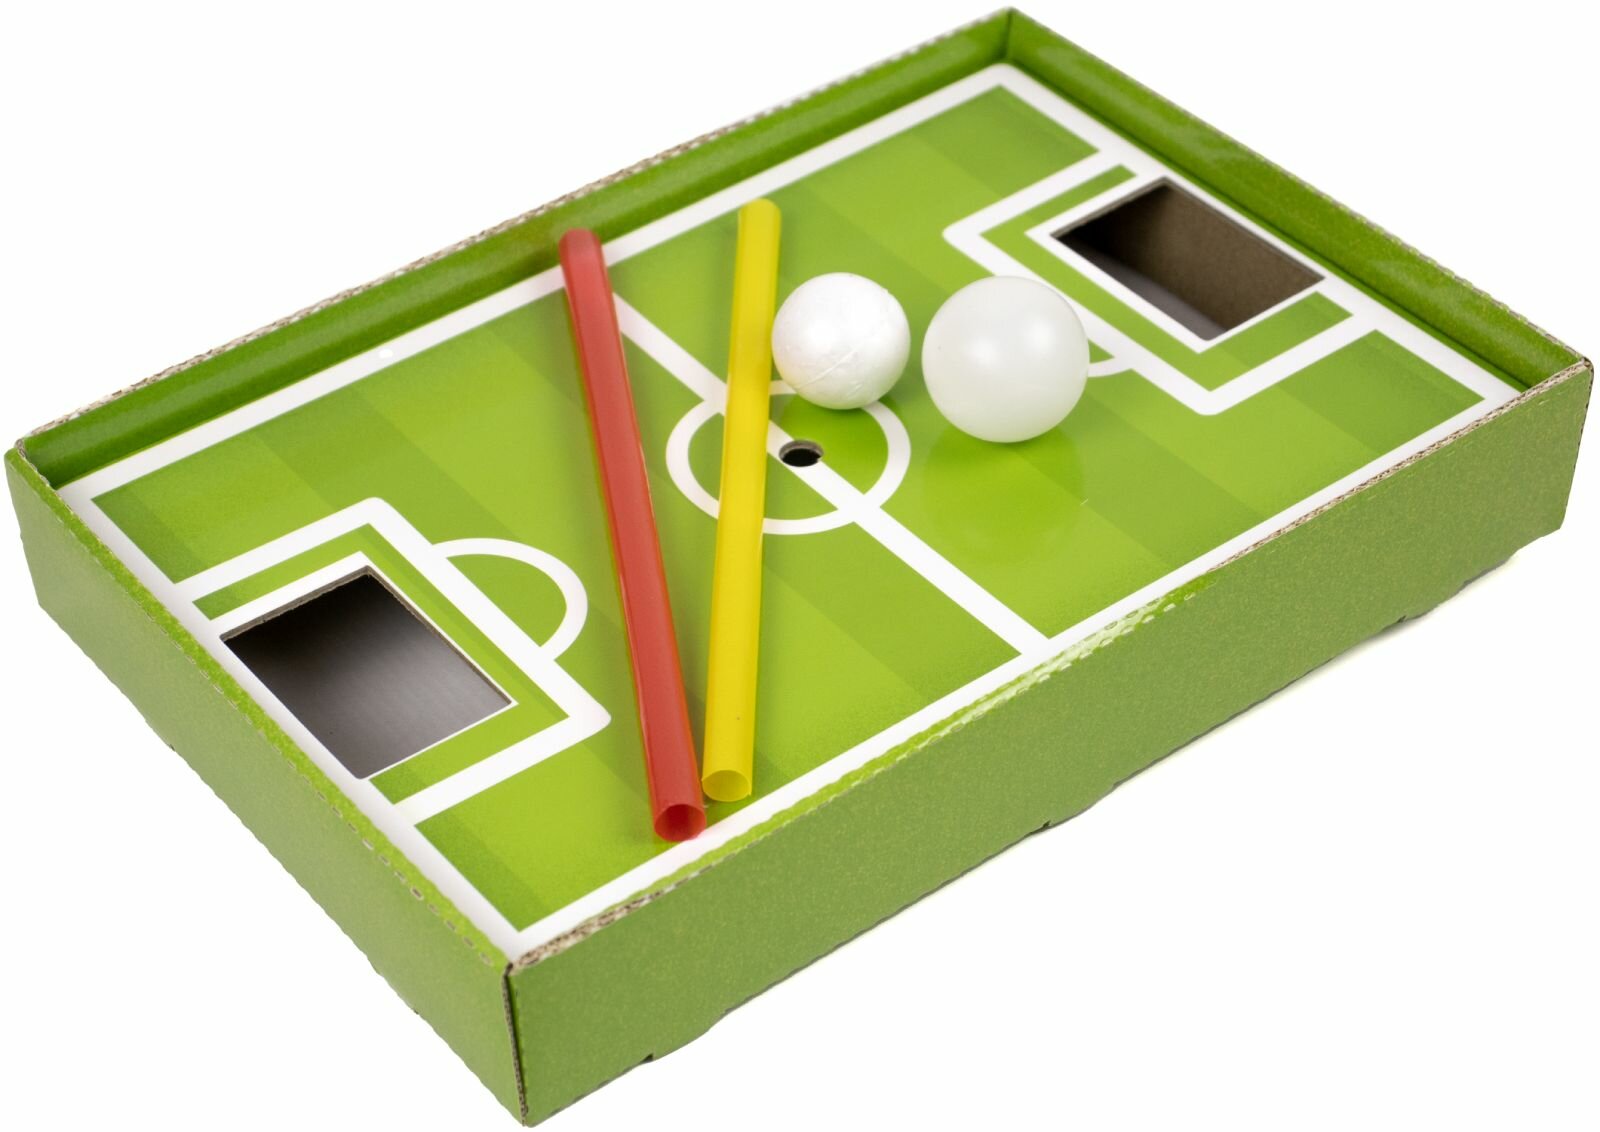 Настольная игра KoroBoom "Воздушный матч" логопедическая игра-тренажер для развития речевого дыхания, артикуляционная гимнастика, футбол-аэробол